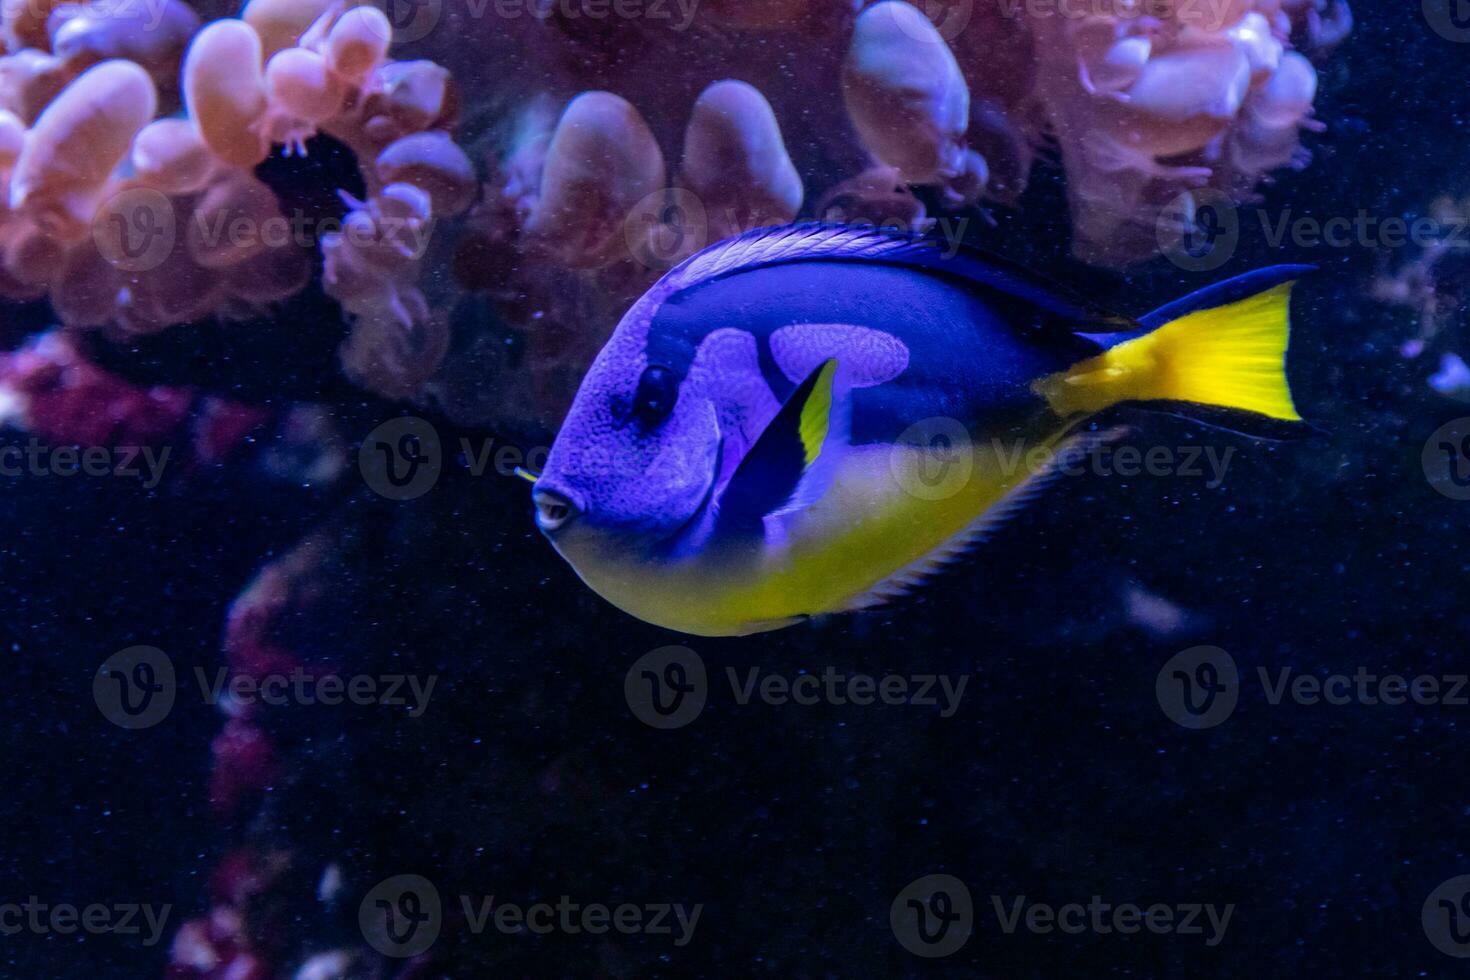 beautiful fish Regal Tang photo